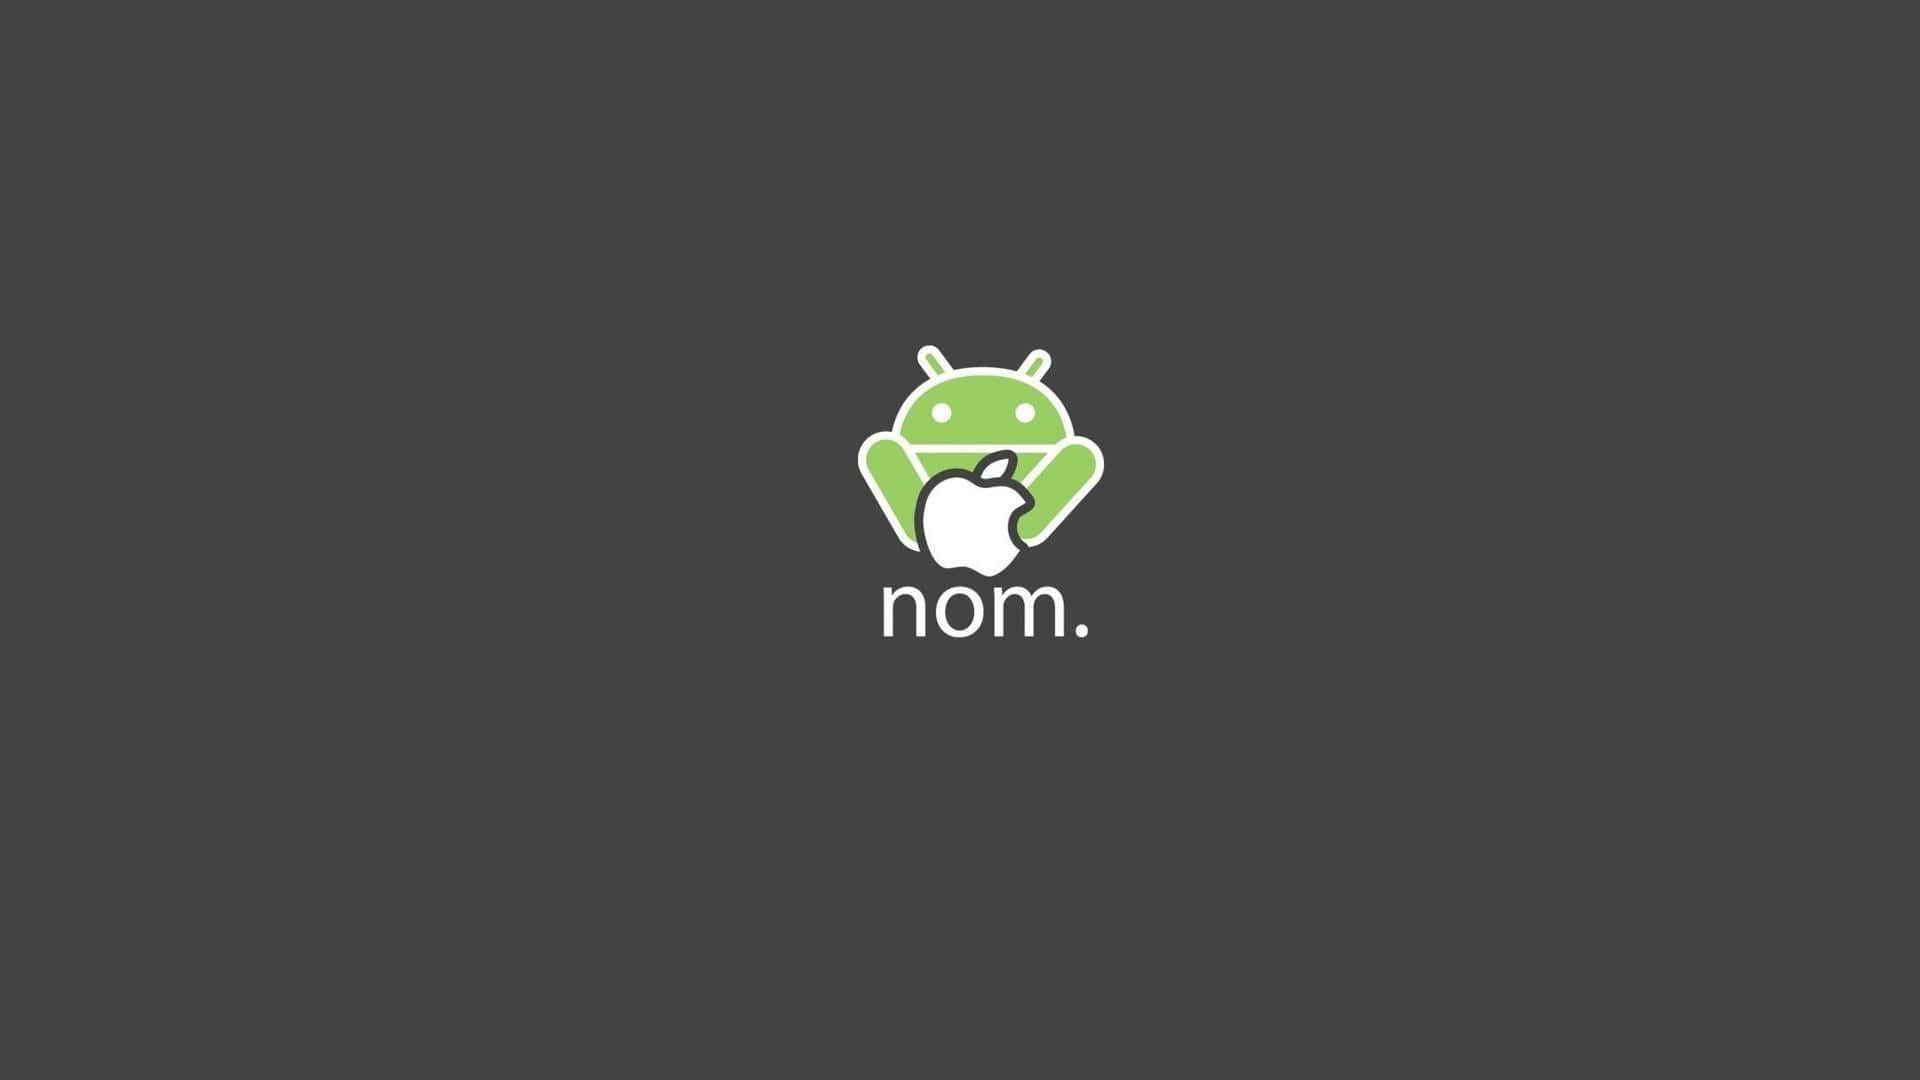 Eingrünes Android-logo Mit Dem Wort 